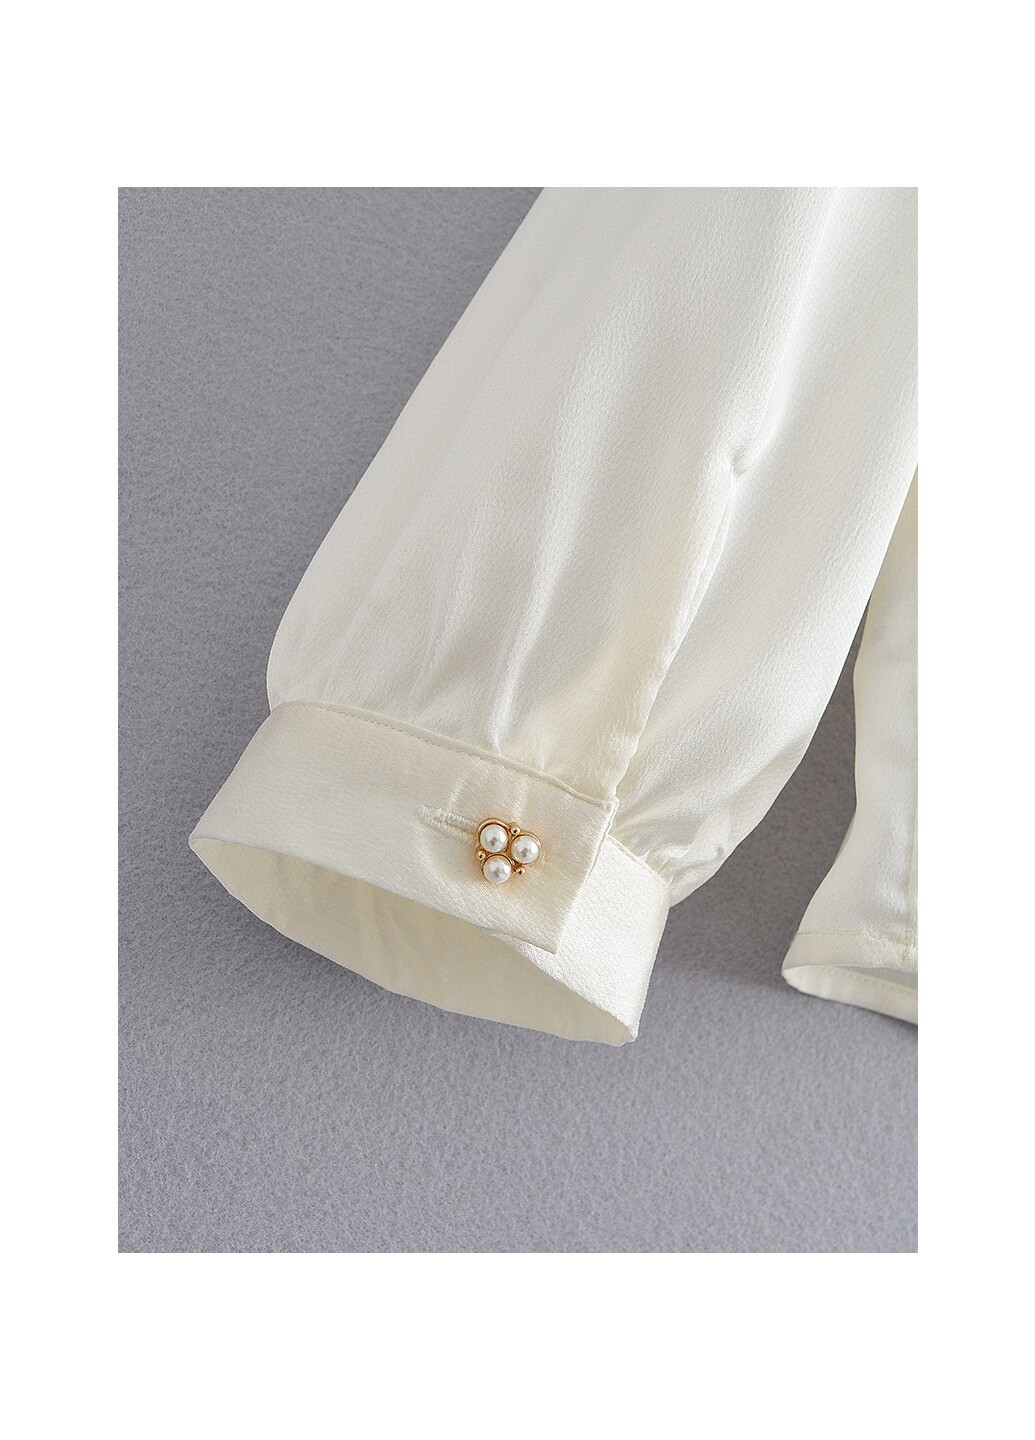 Молочная демисезонная блуза женская с бантом на шее luxe Berni Fashion 58630